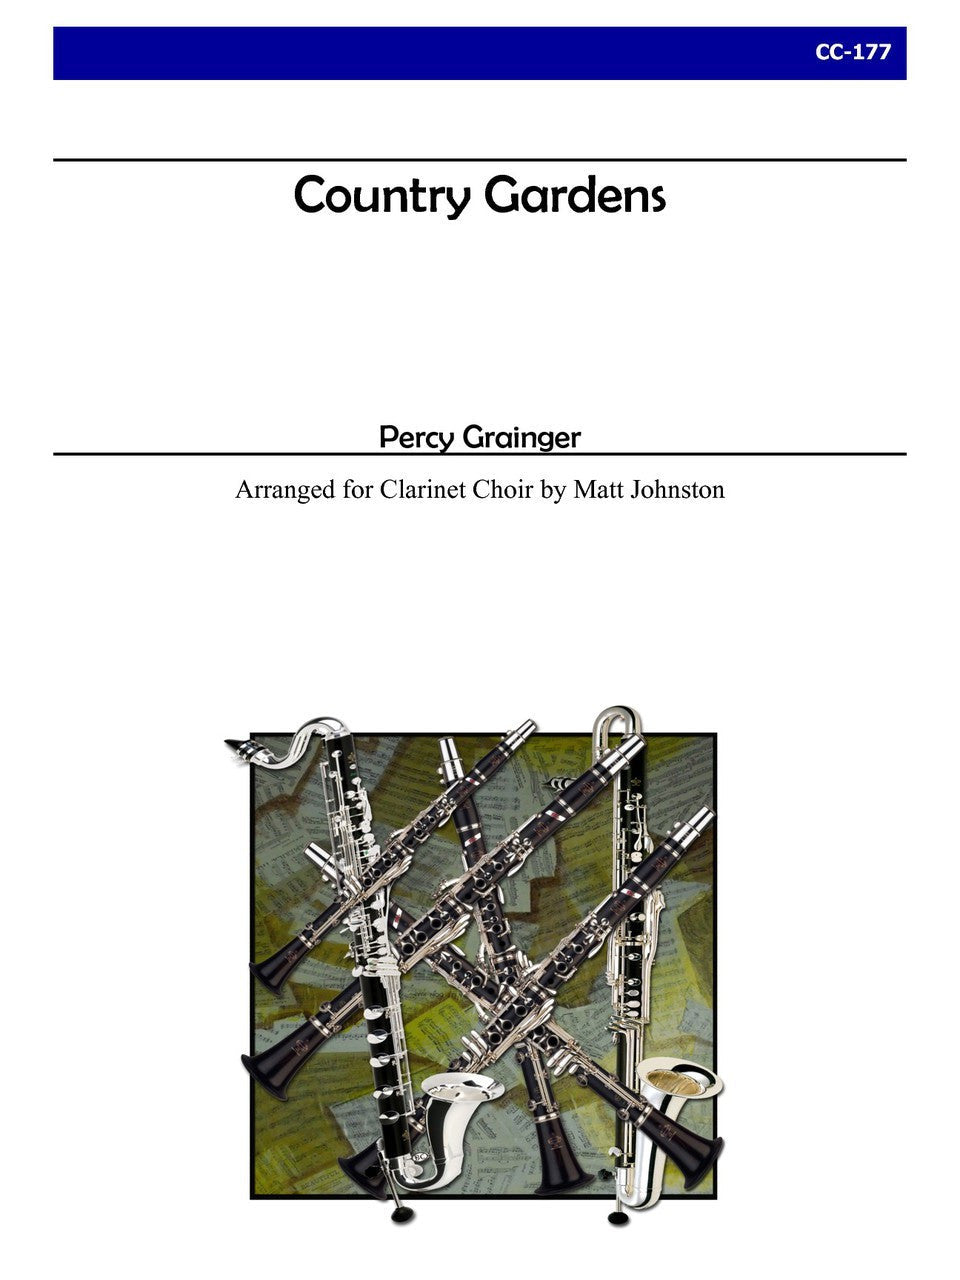 Grainger (arr. Matt Johnston) - Country Gardens for Clarinet Choir